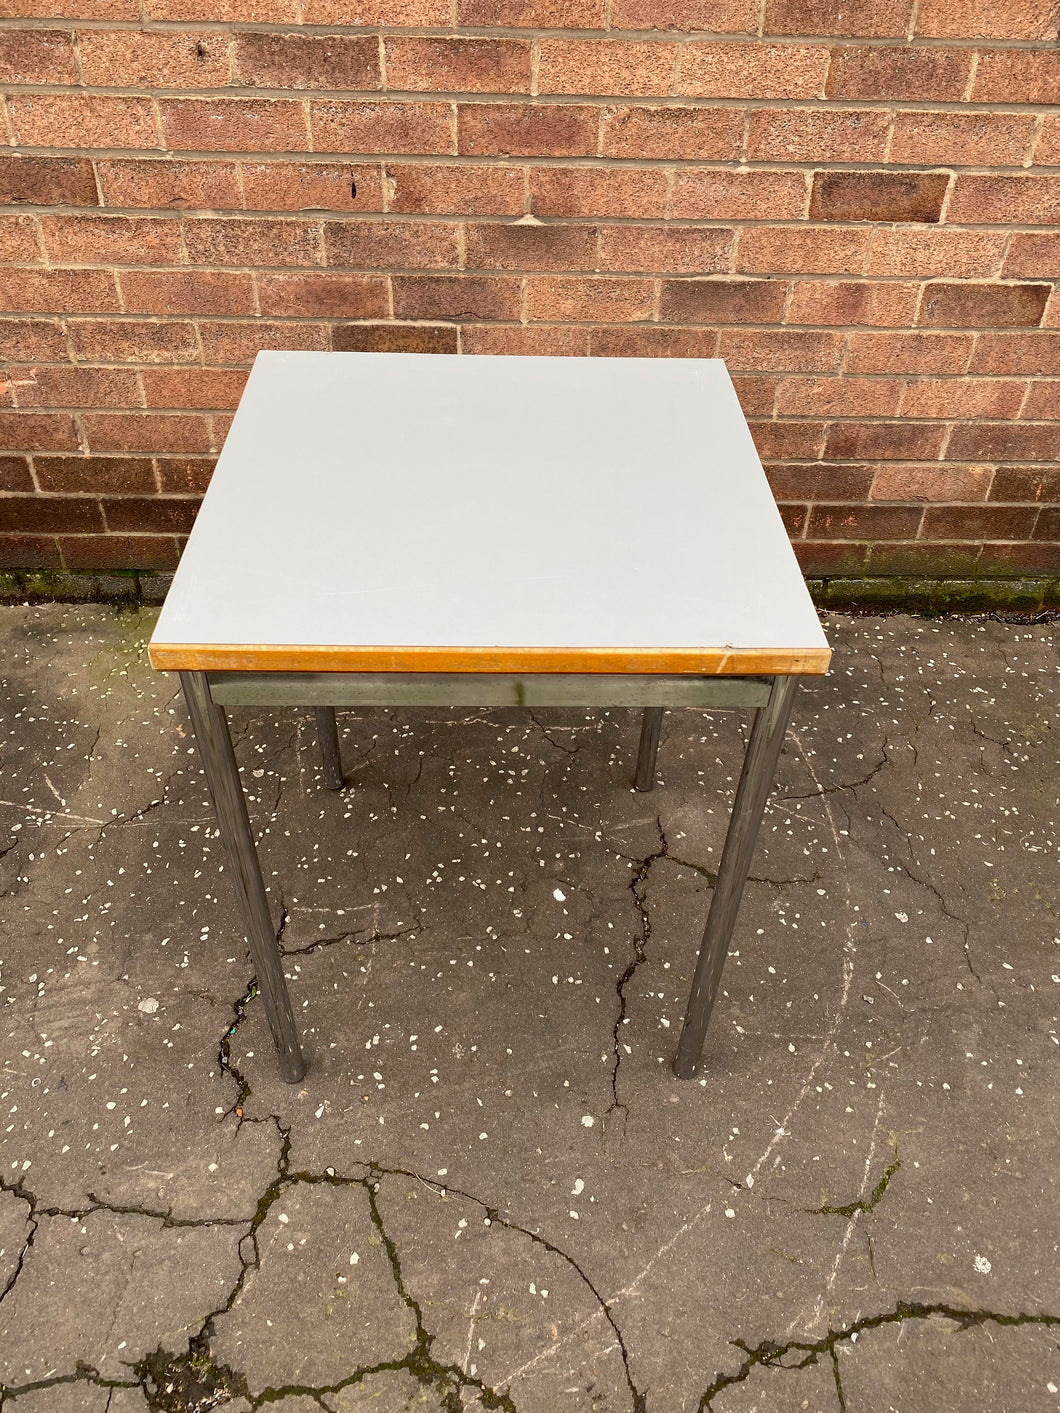 Square table / desk